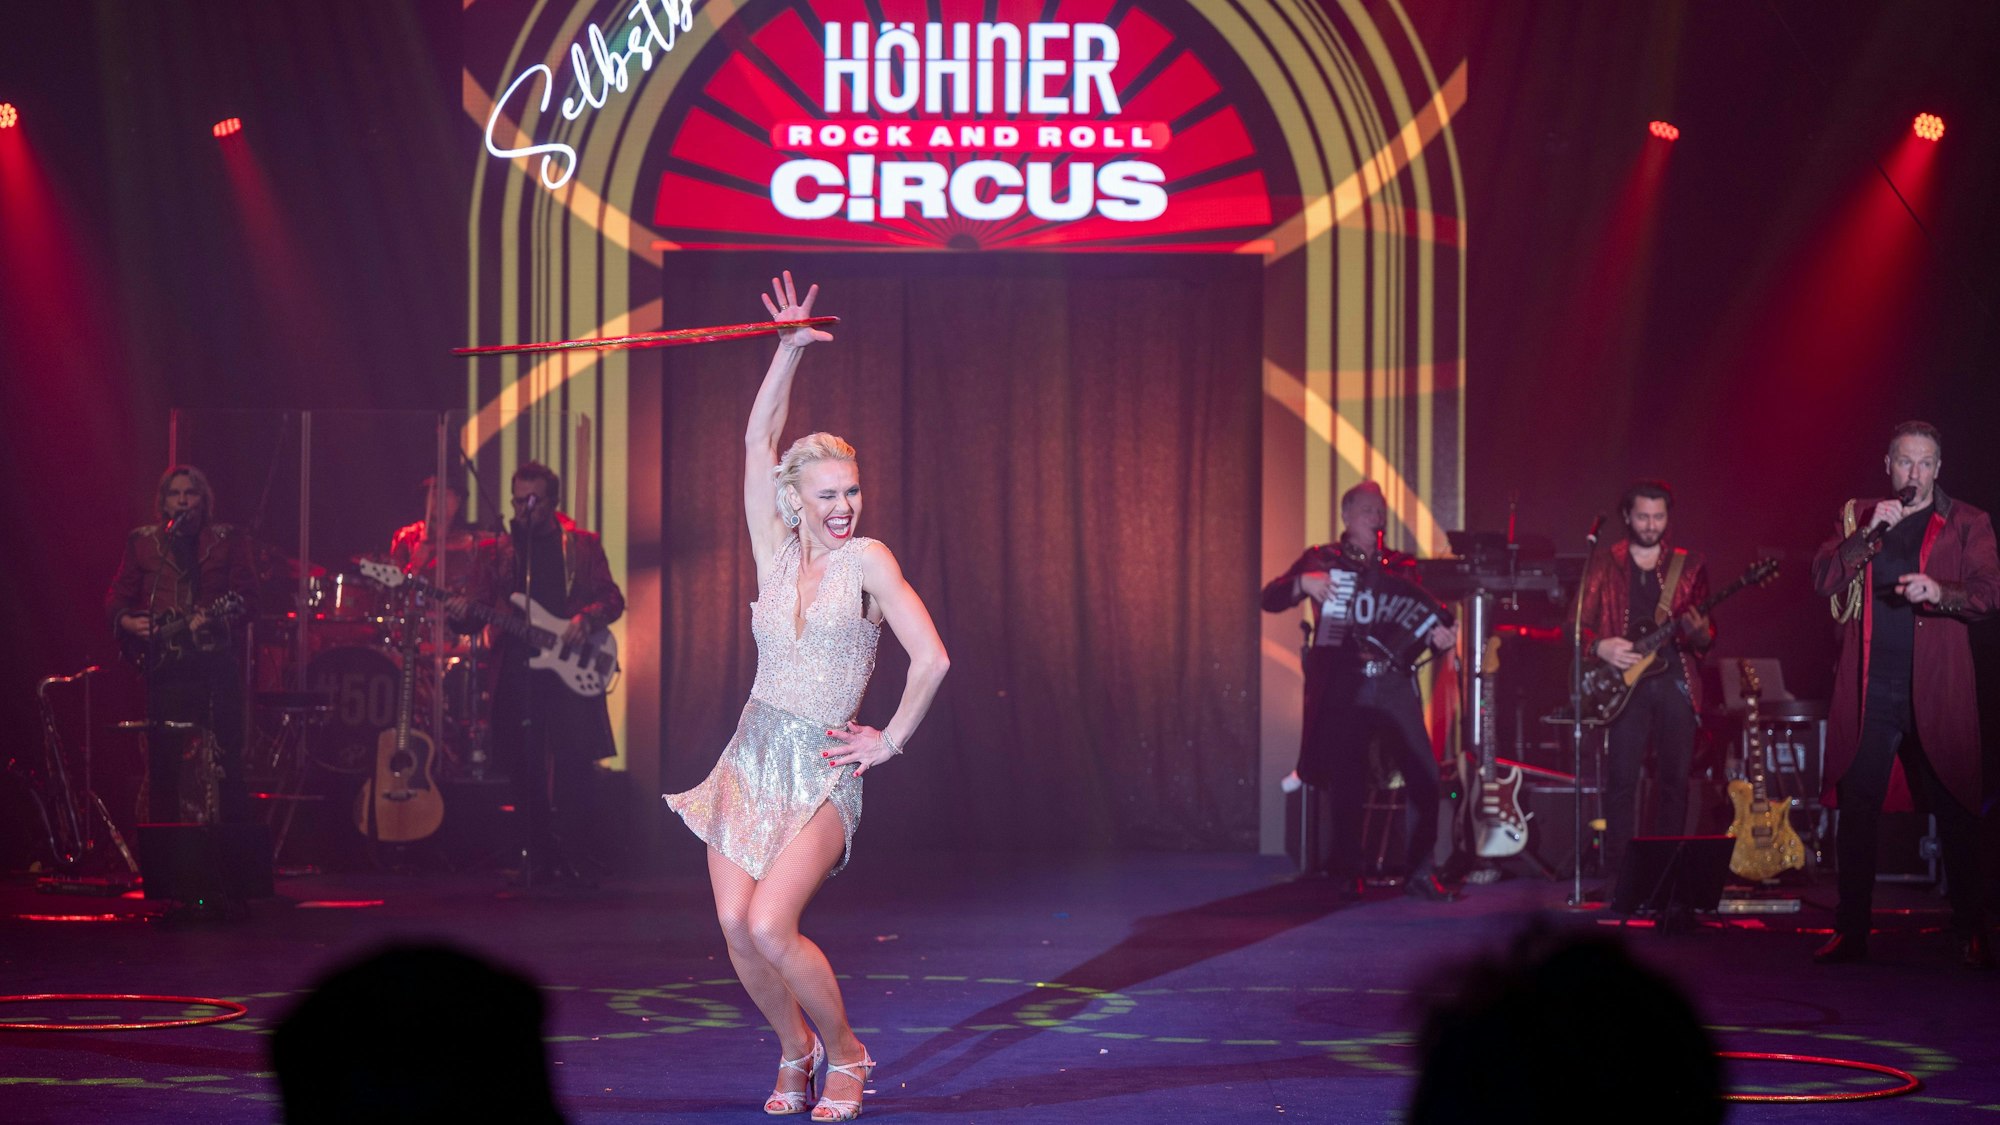 Eine Frau schwingt einen Reifen am Arm, im Hintergrund die Höhner und das Logo des Zirkus‘.